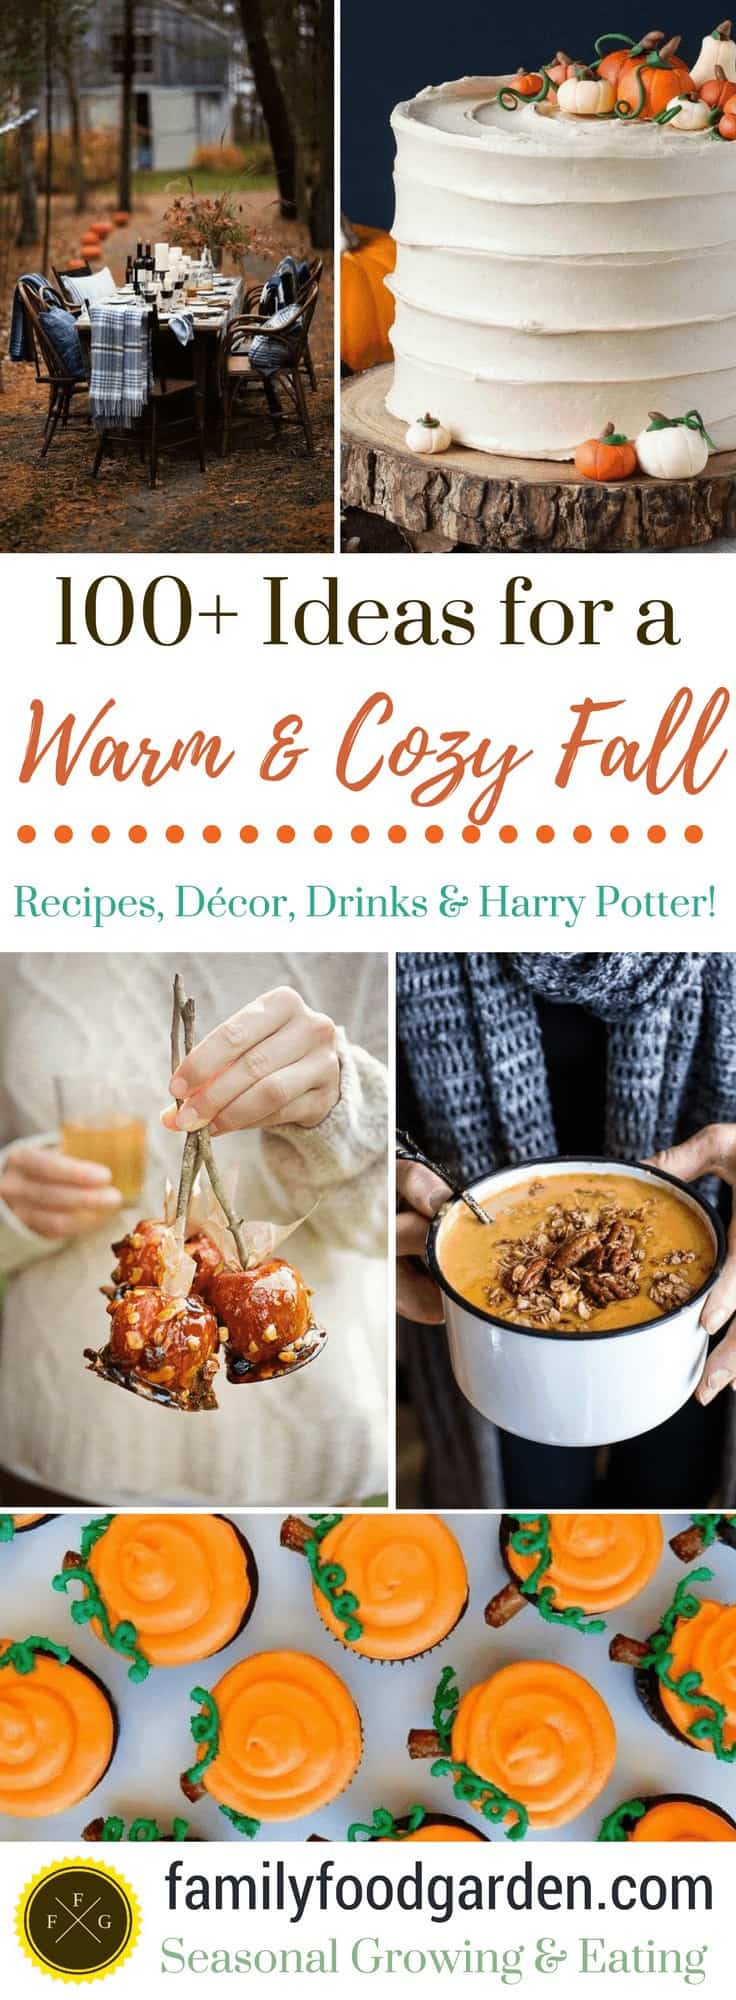 Autumn Recipes, Décor & Drinks